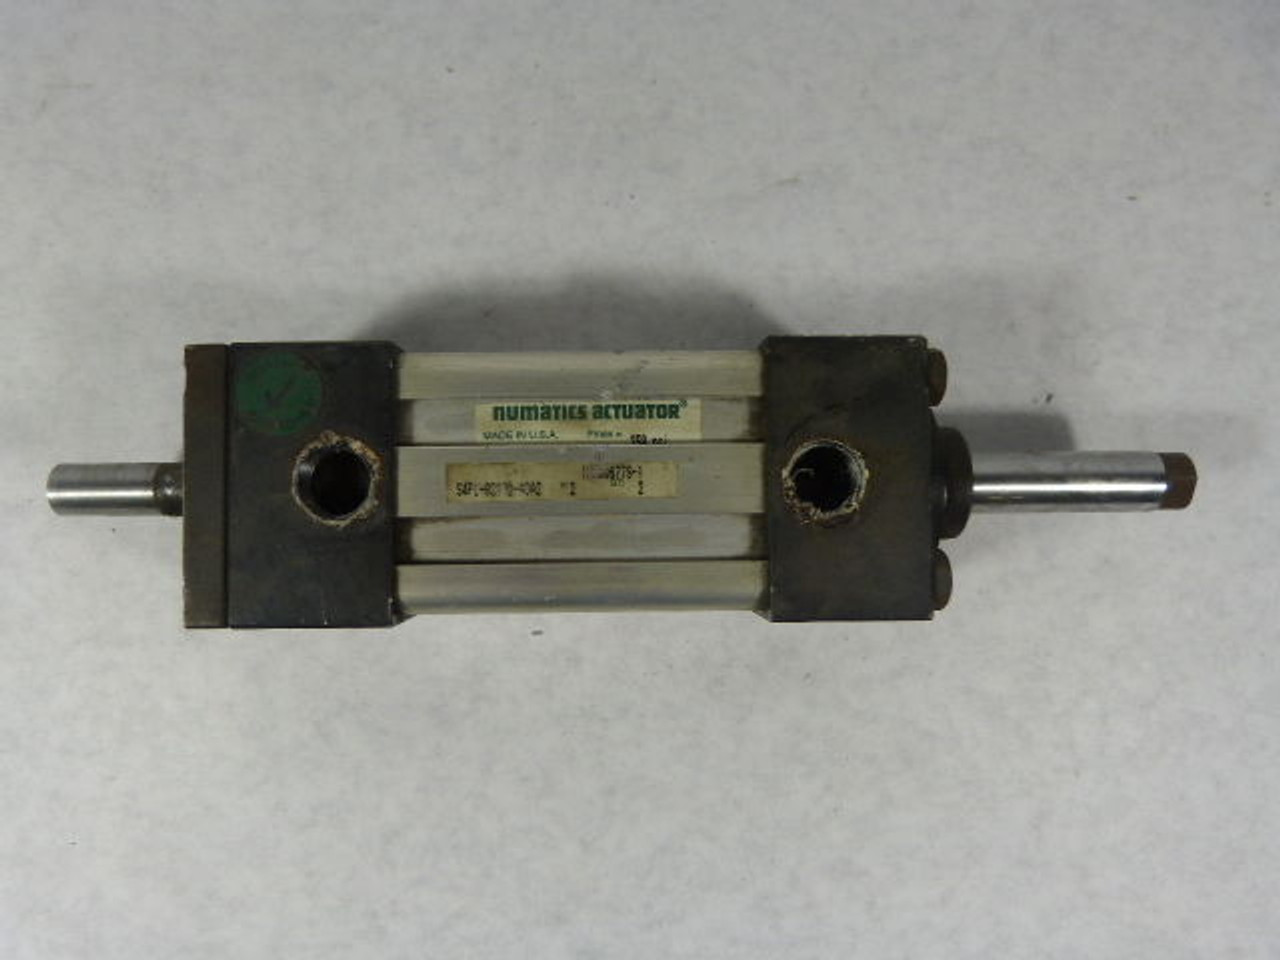 Numatics S4FL-0233D-ADA2 Actuator 250 psi USED